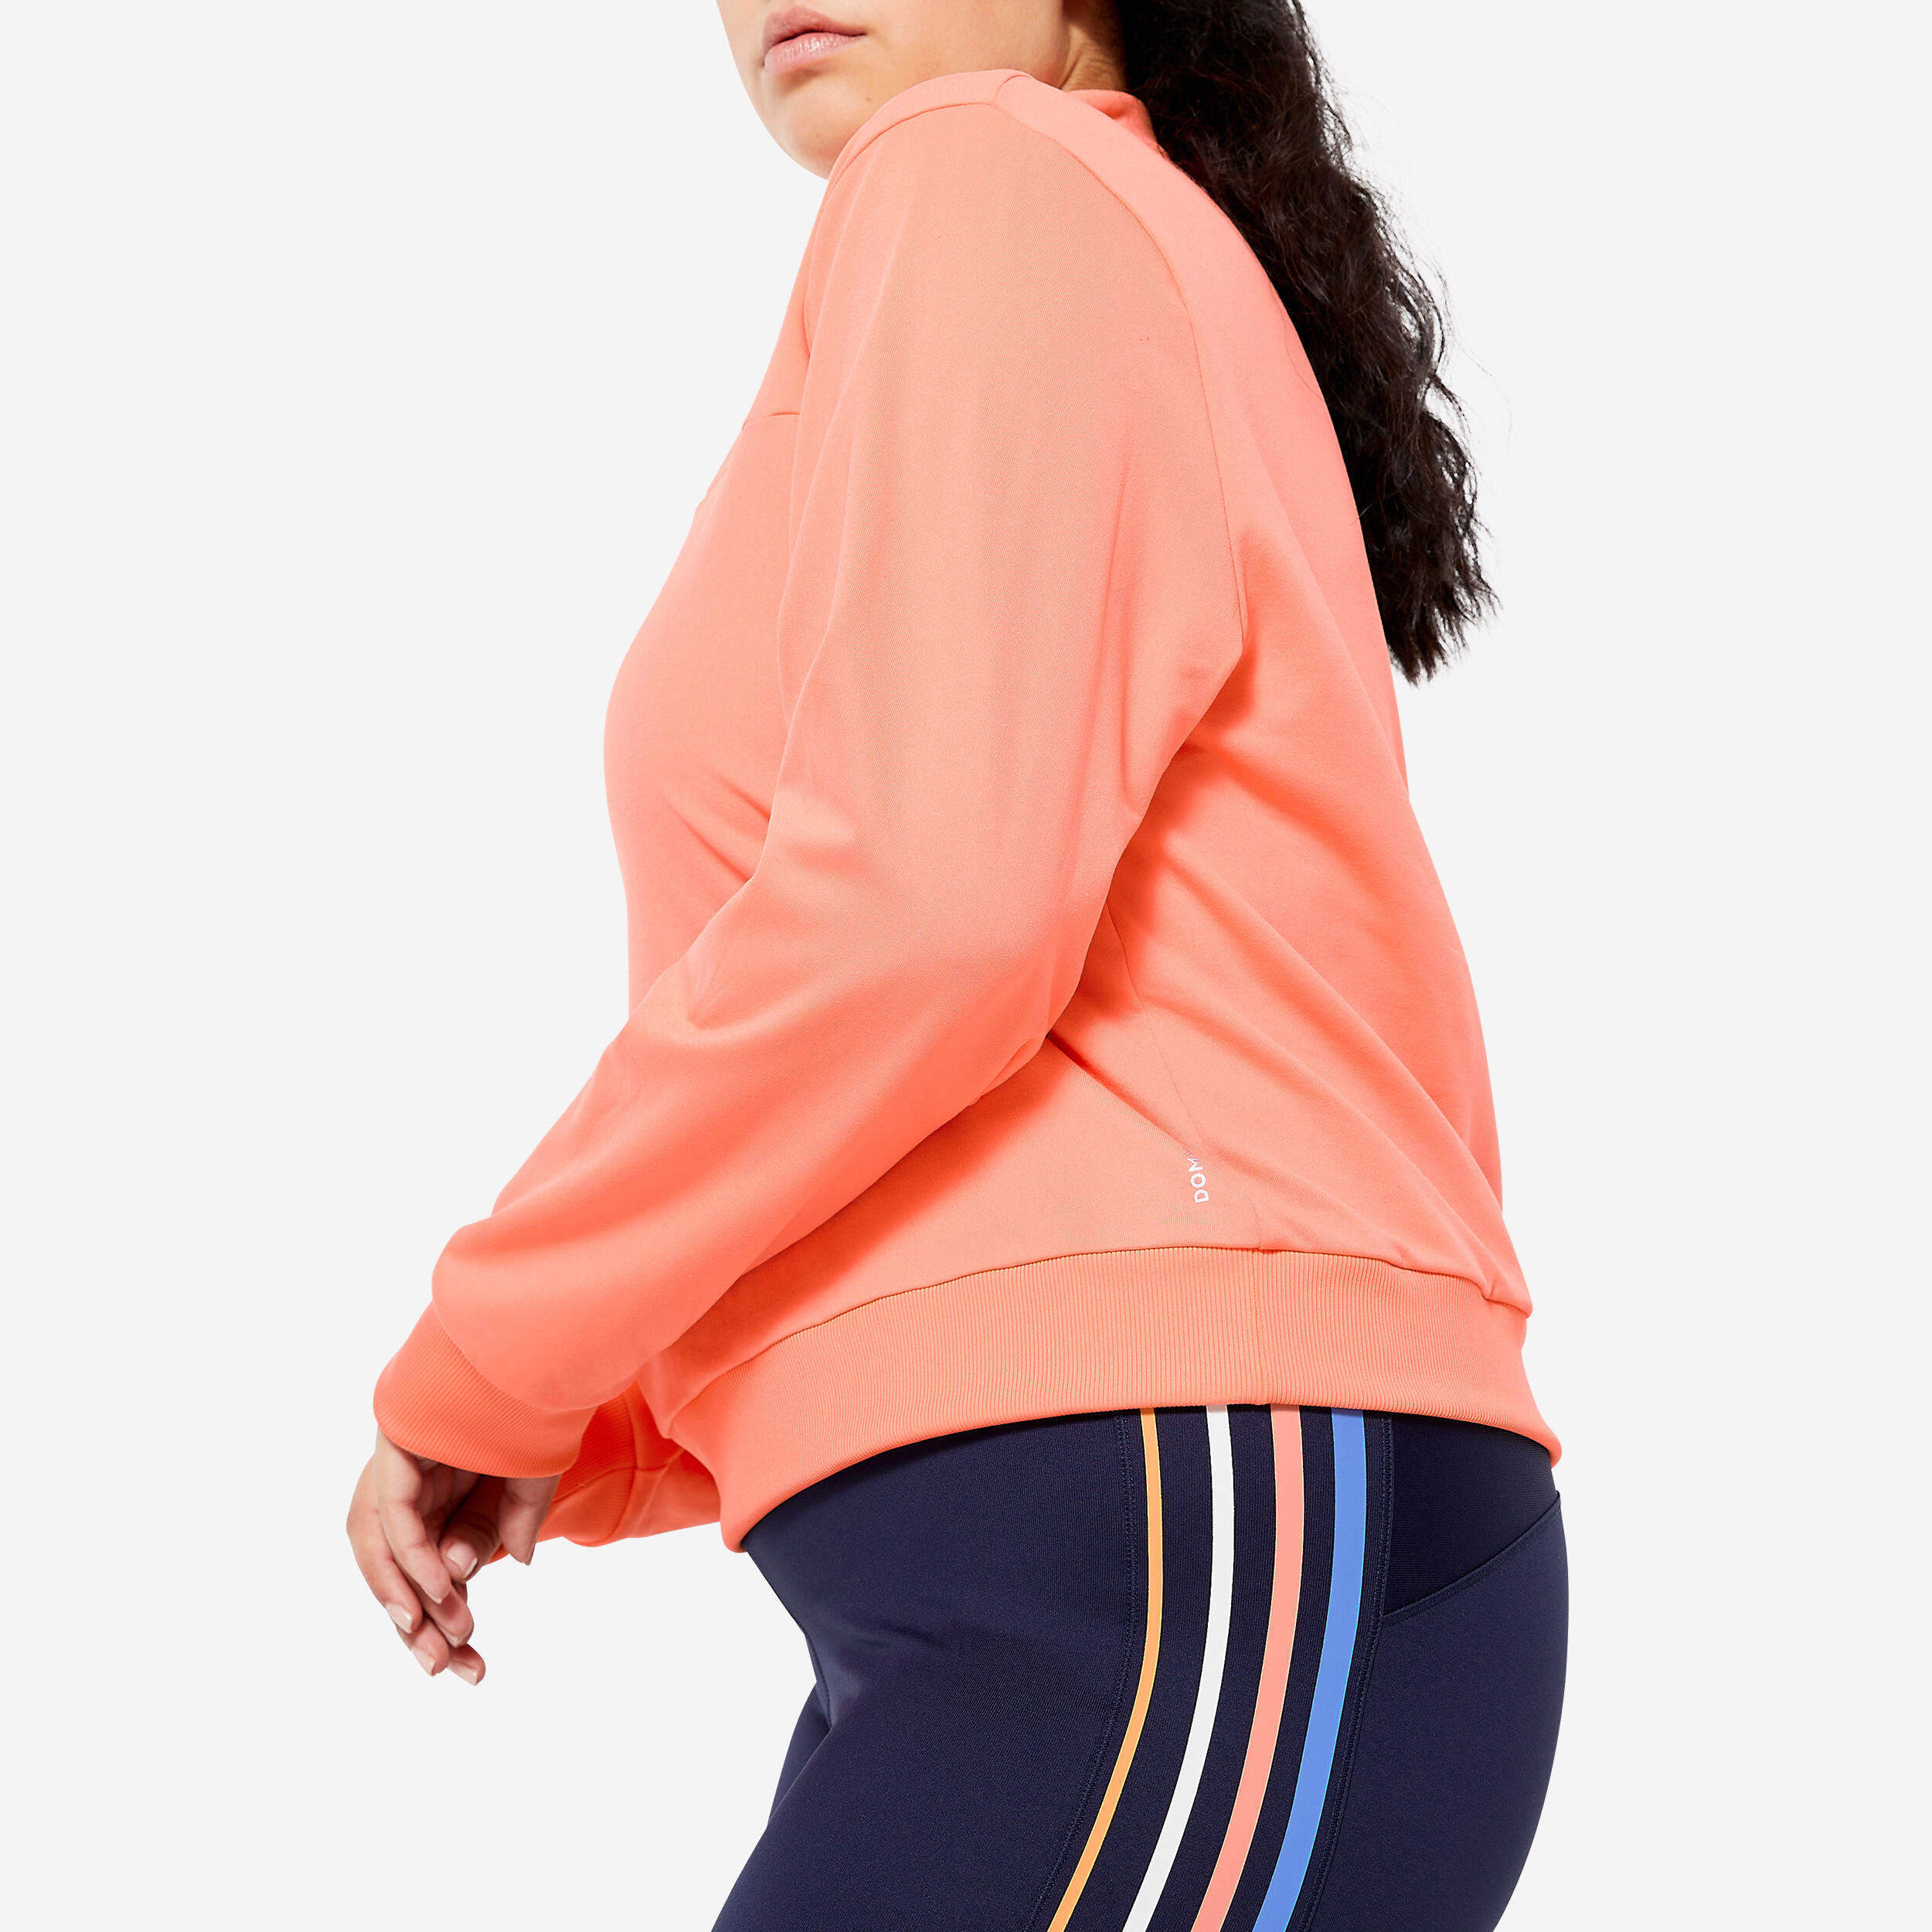 Women's Quarter-Zip Long-Sleeved Cardio Fitness Sweatshirt - Coral 5/6